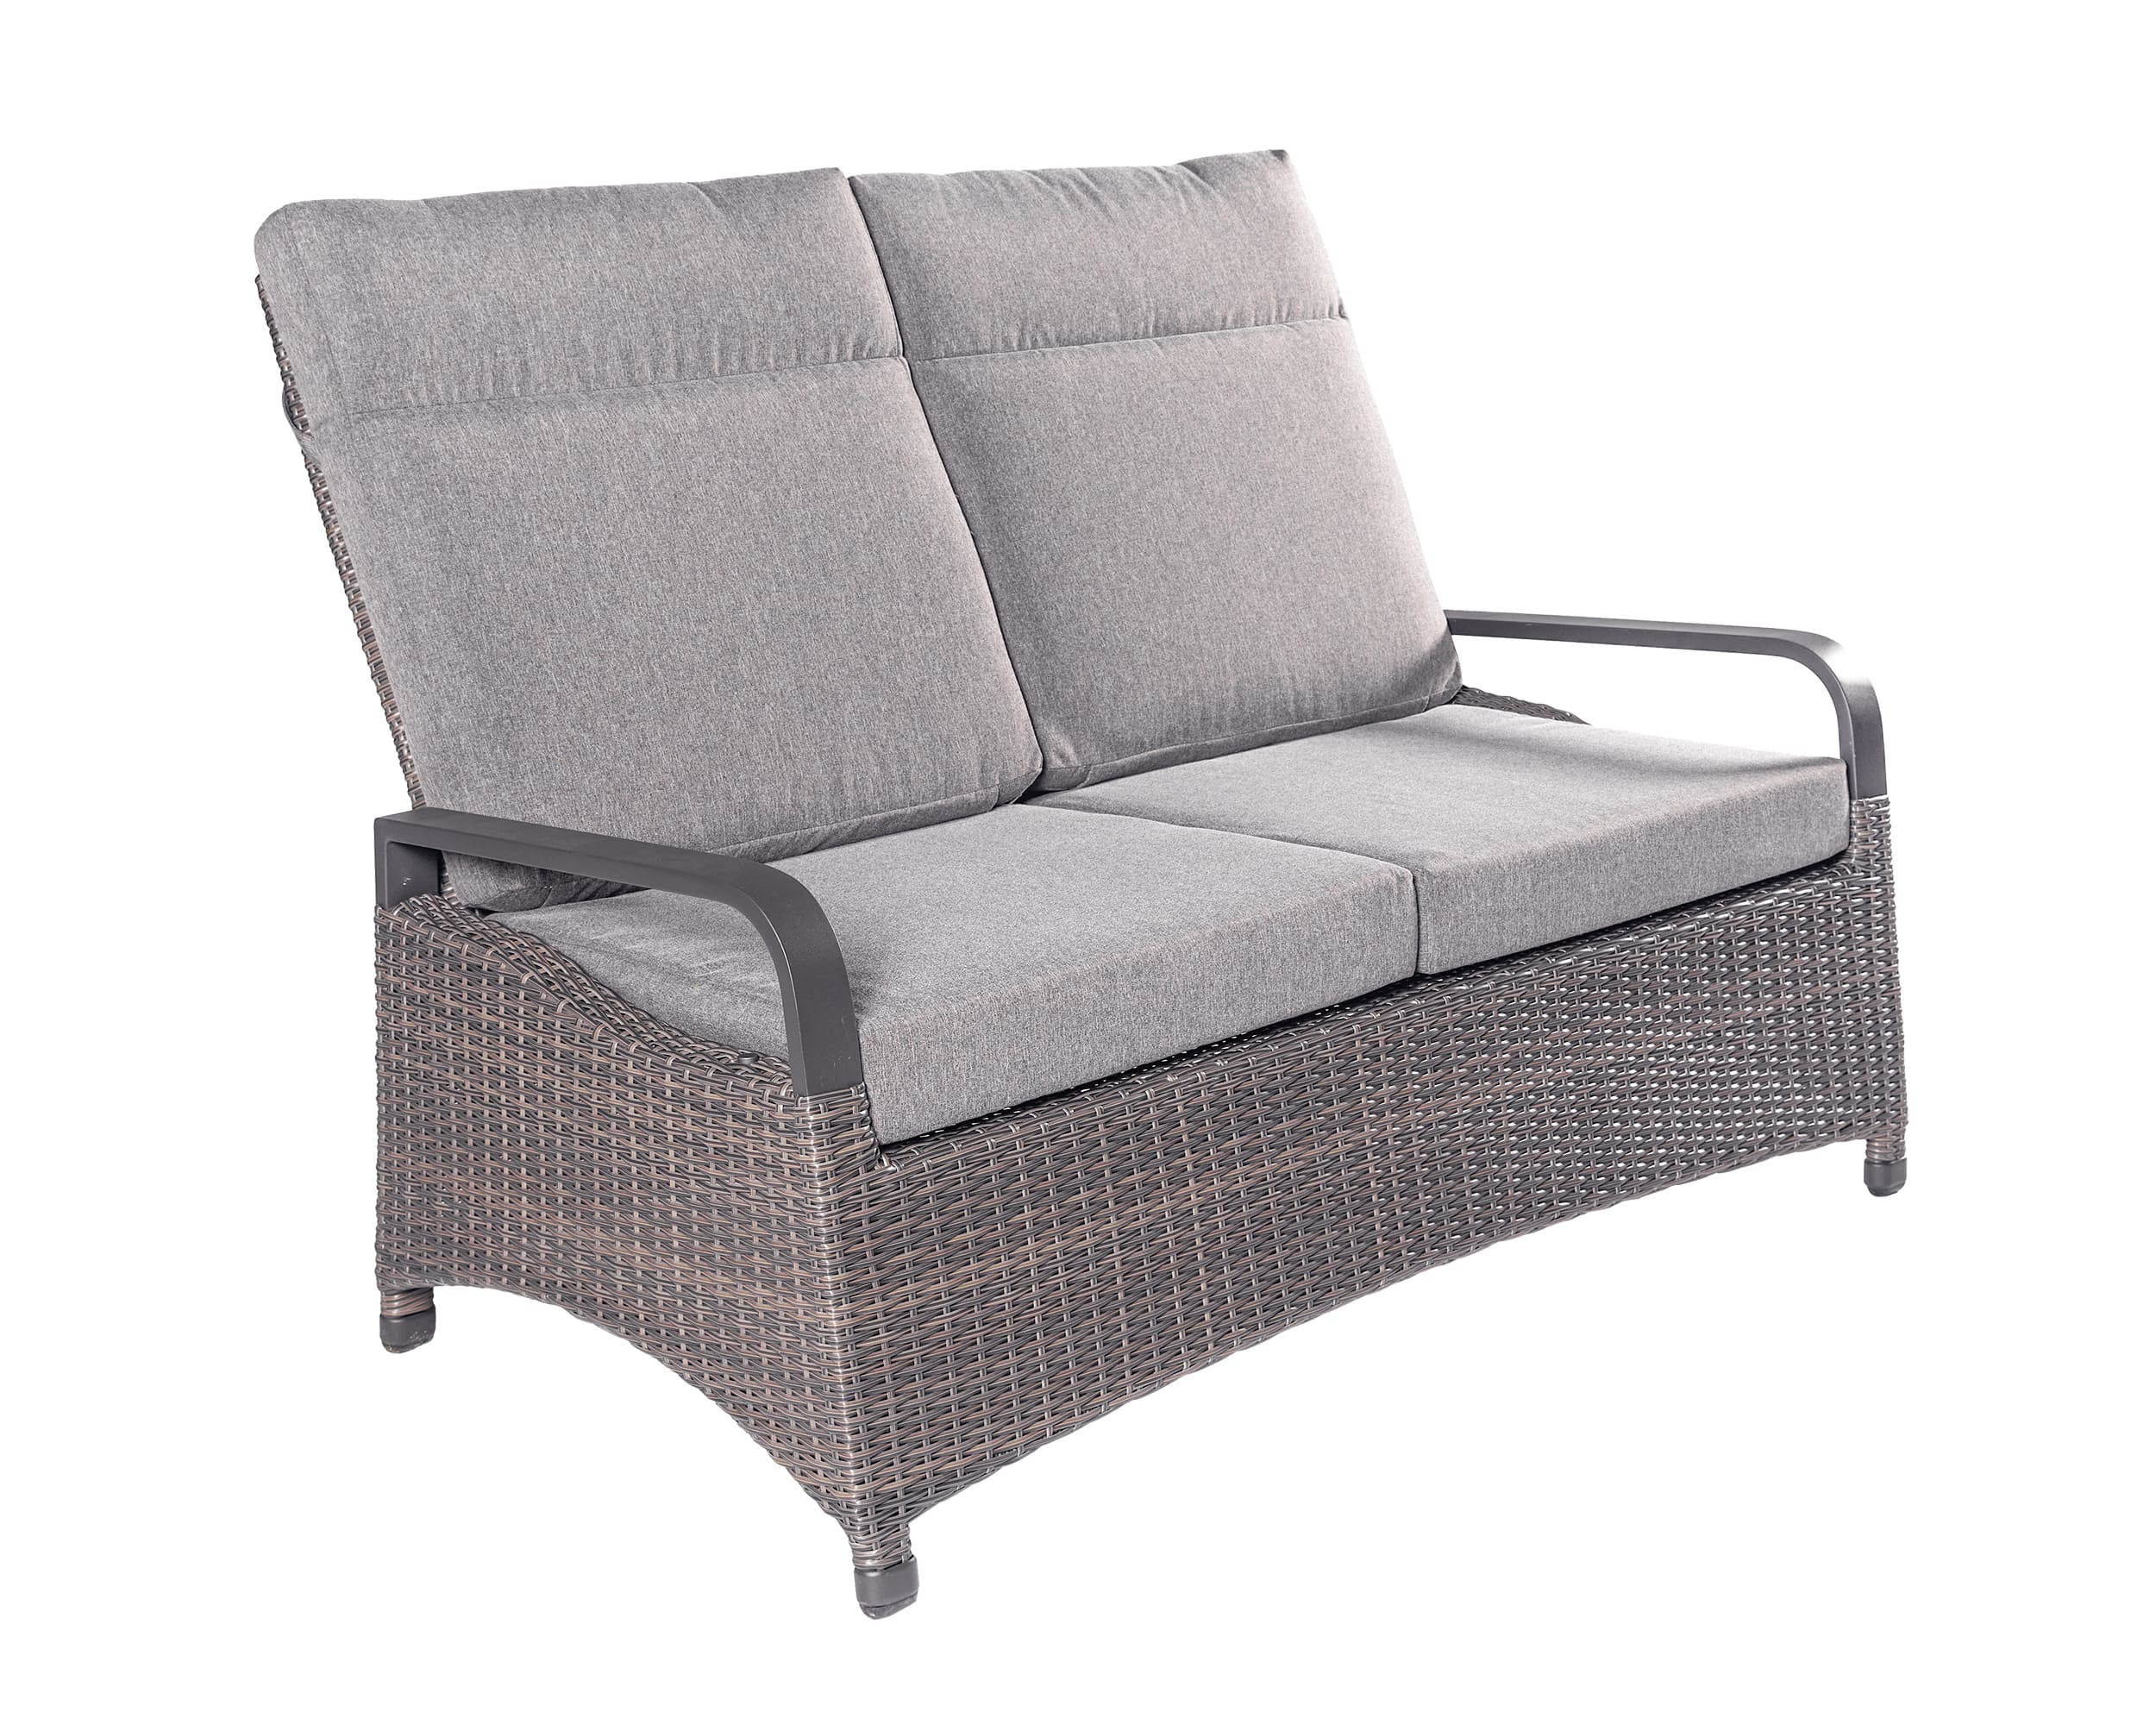 LC Garden »Komido« 2-Sitzer Sofa omega braun 89x140x105cm Zweisitzer aus handgeflochtenem Polyrattan inkl. Sitzkissen